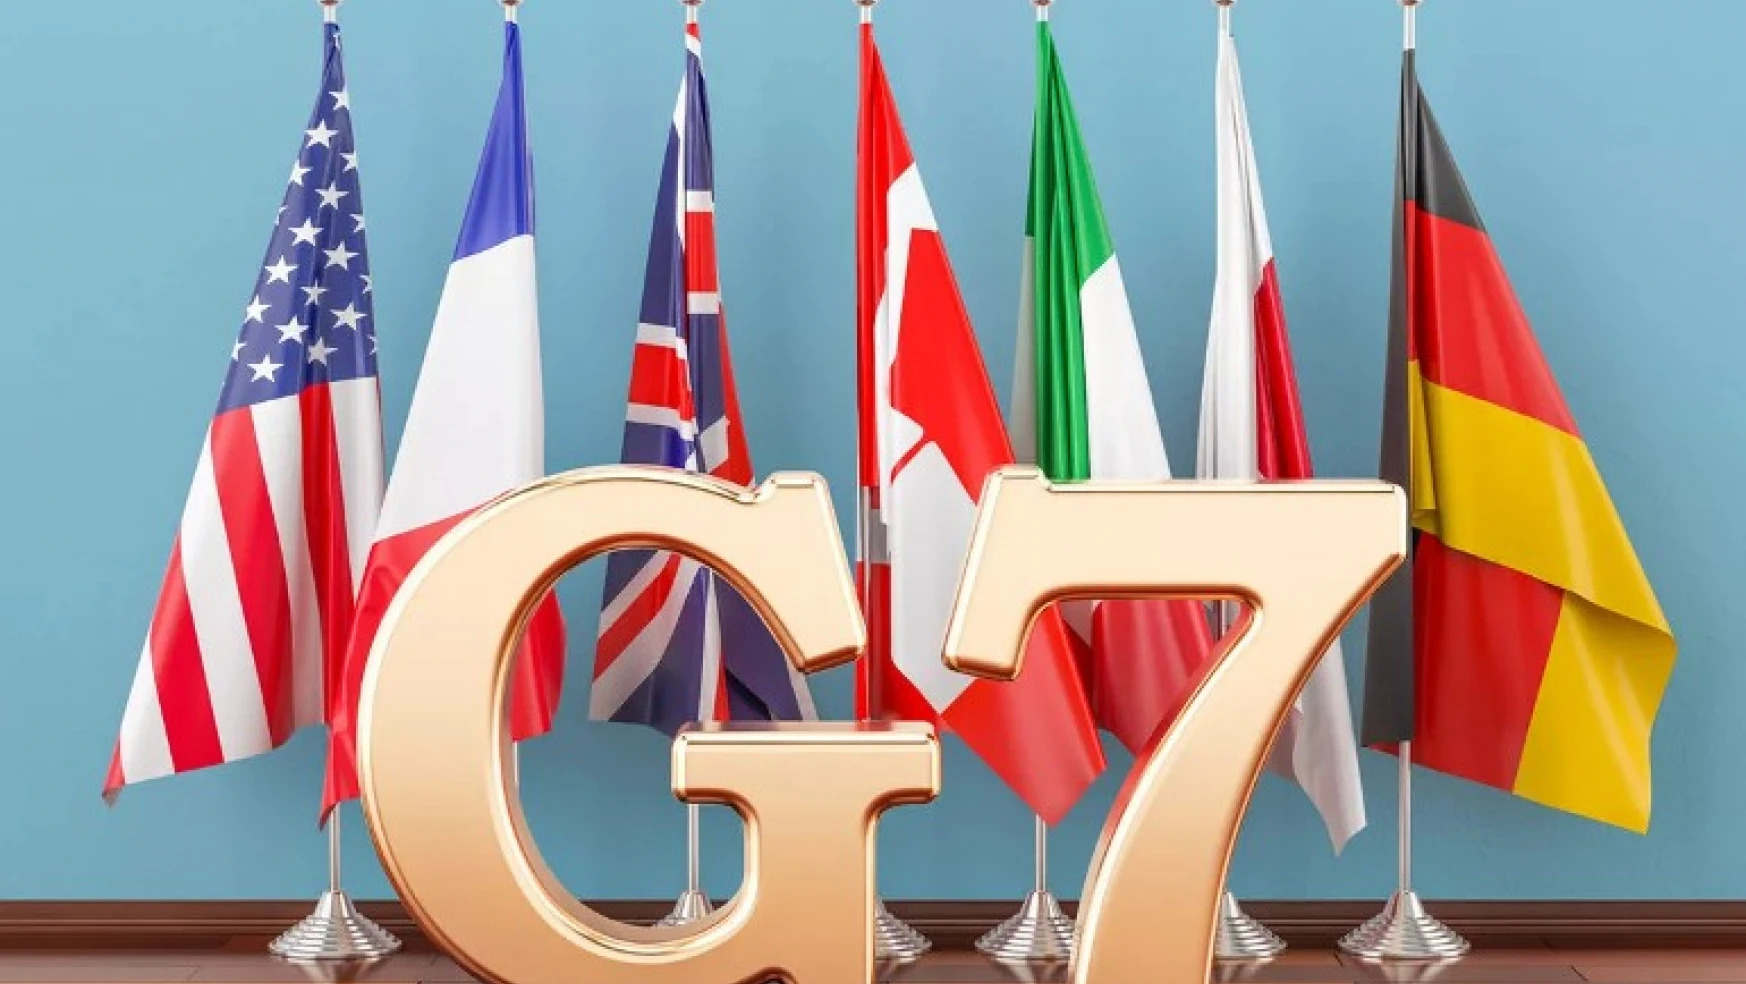 G7: Rusya'nın sözde işgalini ve sahte referandumlarını asla tanımayacağız